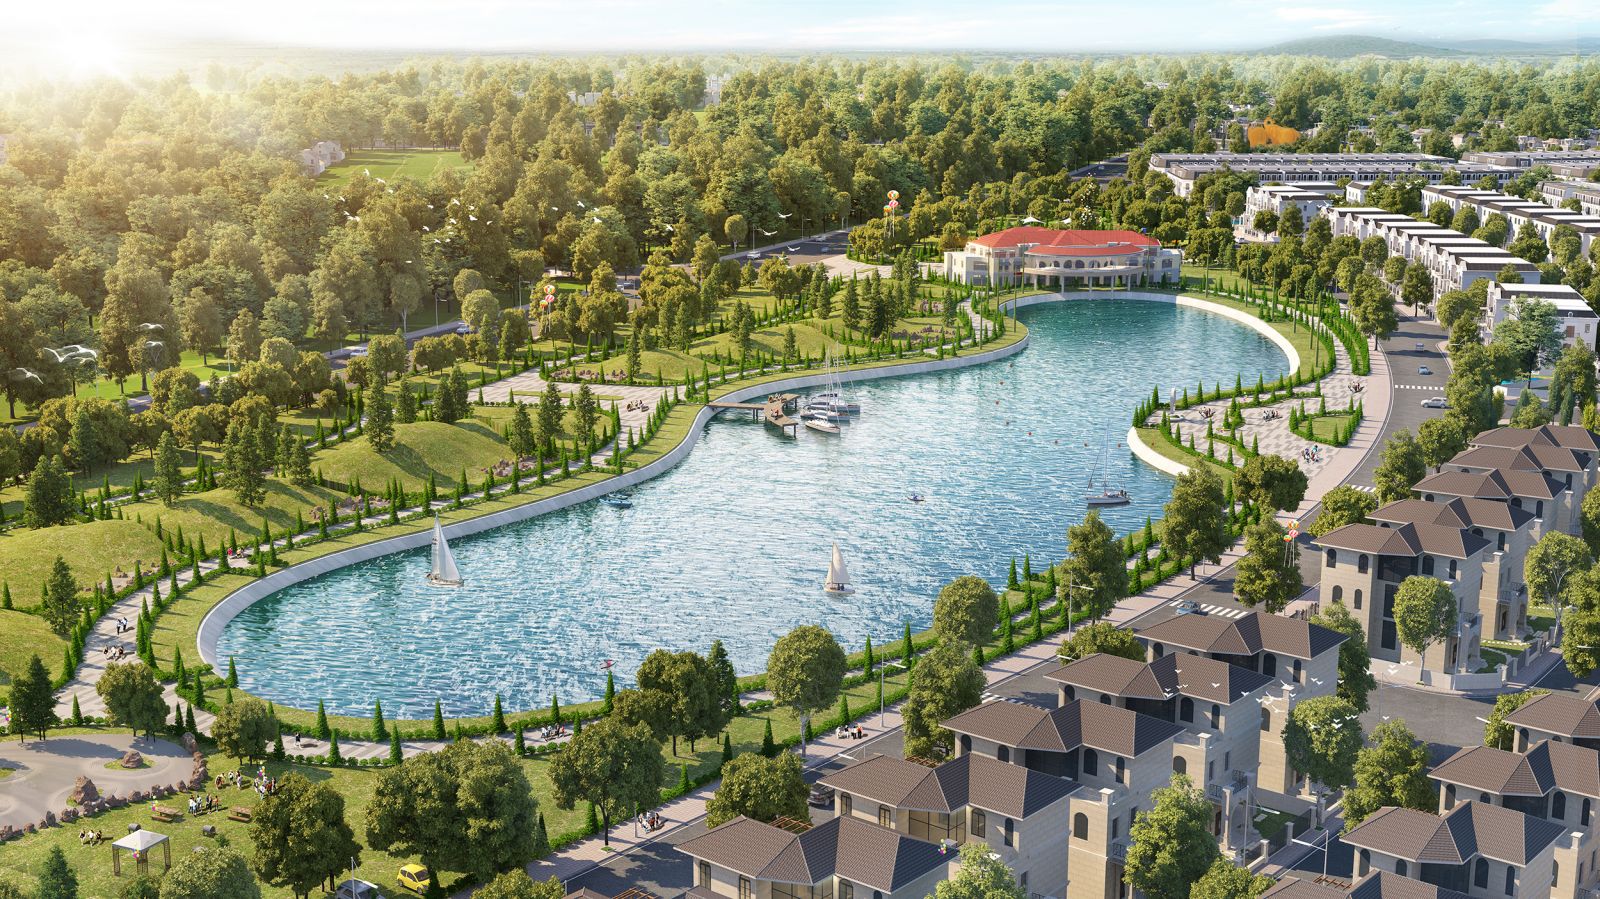 EcoCity Premia không chỉ xanh trong thiết kế mà còn xanh cảnh quan với công viên hồ điều hòa rộng 9ha.